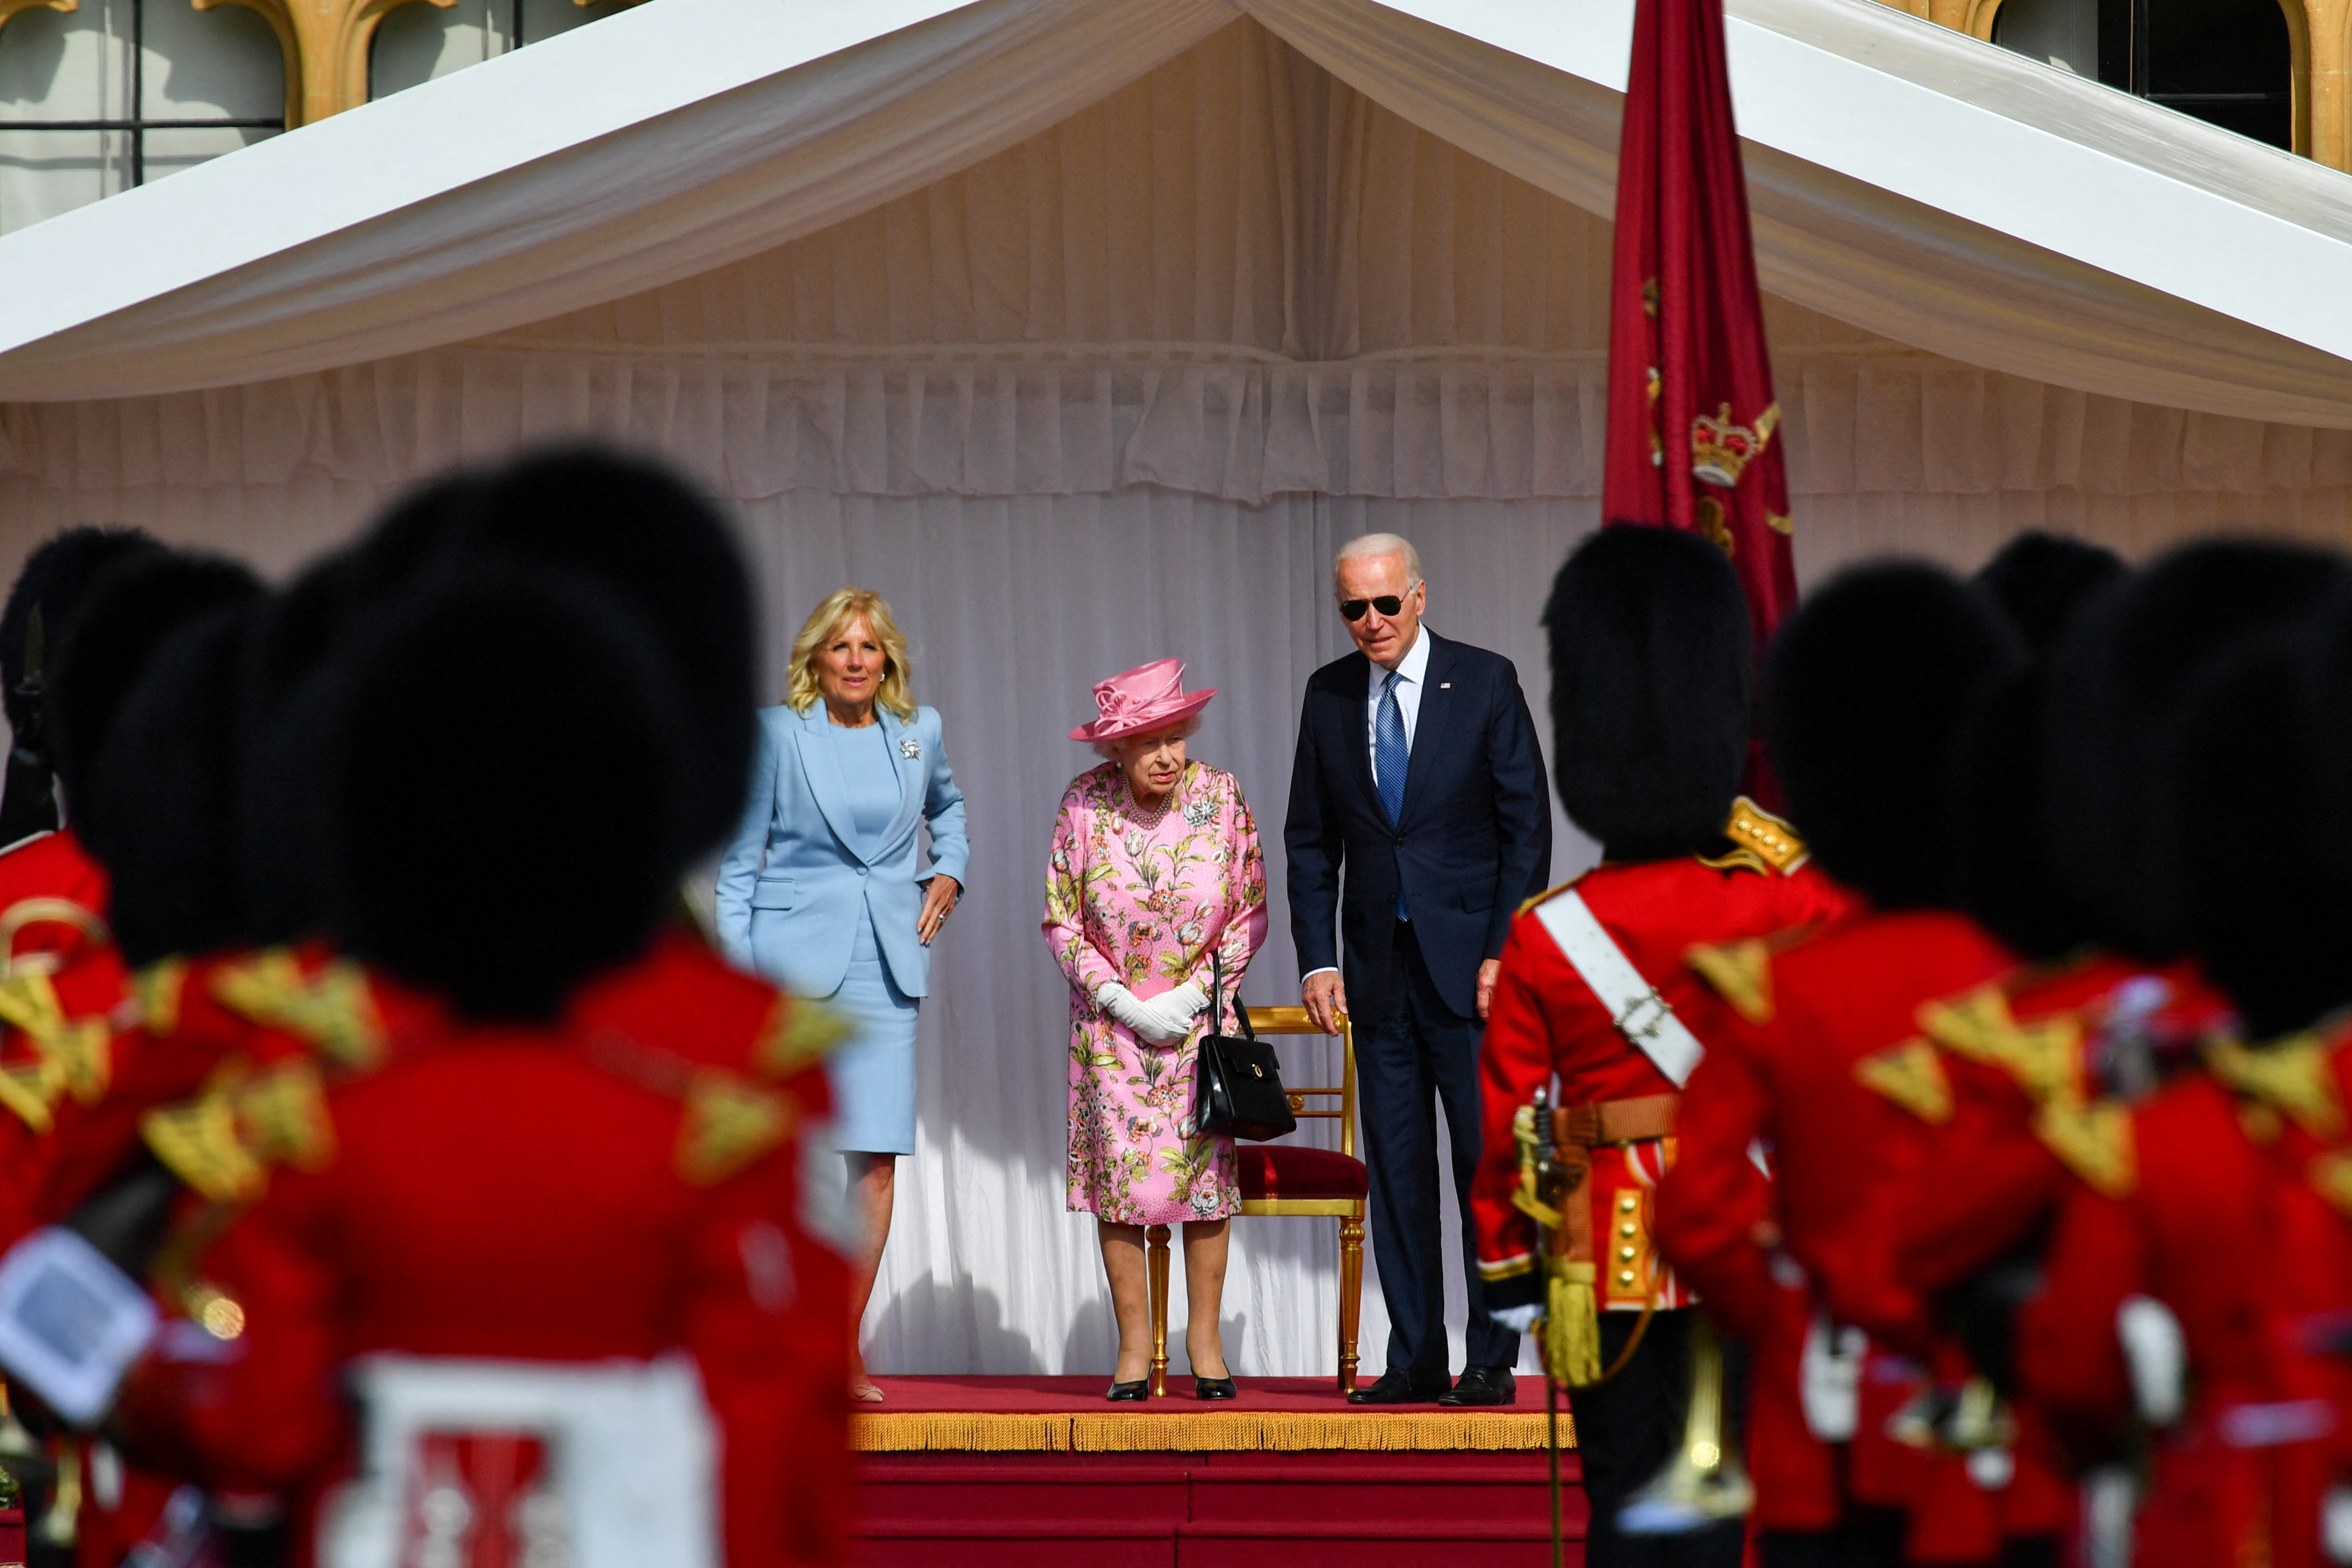 Foto de archivo del presidente Joe Biden, la primera dama Jill Biden y la reina Isabel II en Windsor el 13 de junio de 2021 (REUTERS/Dylan Martinez)